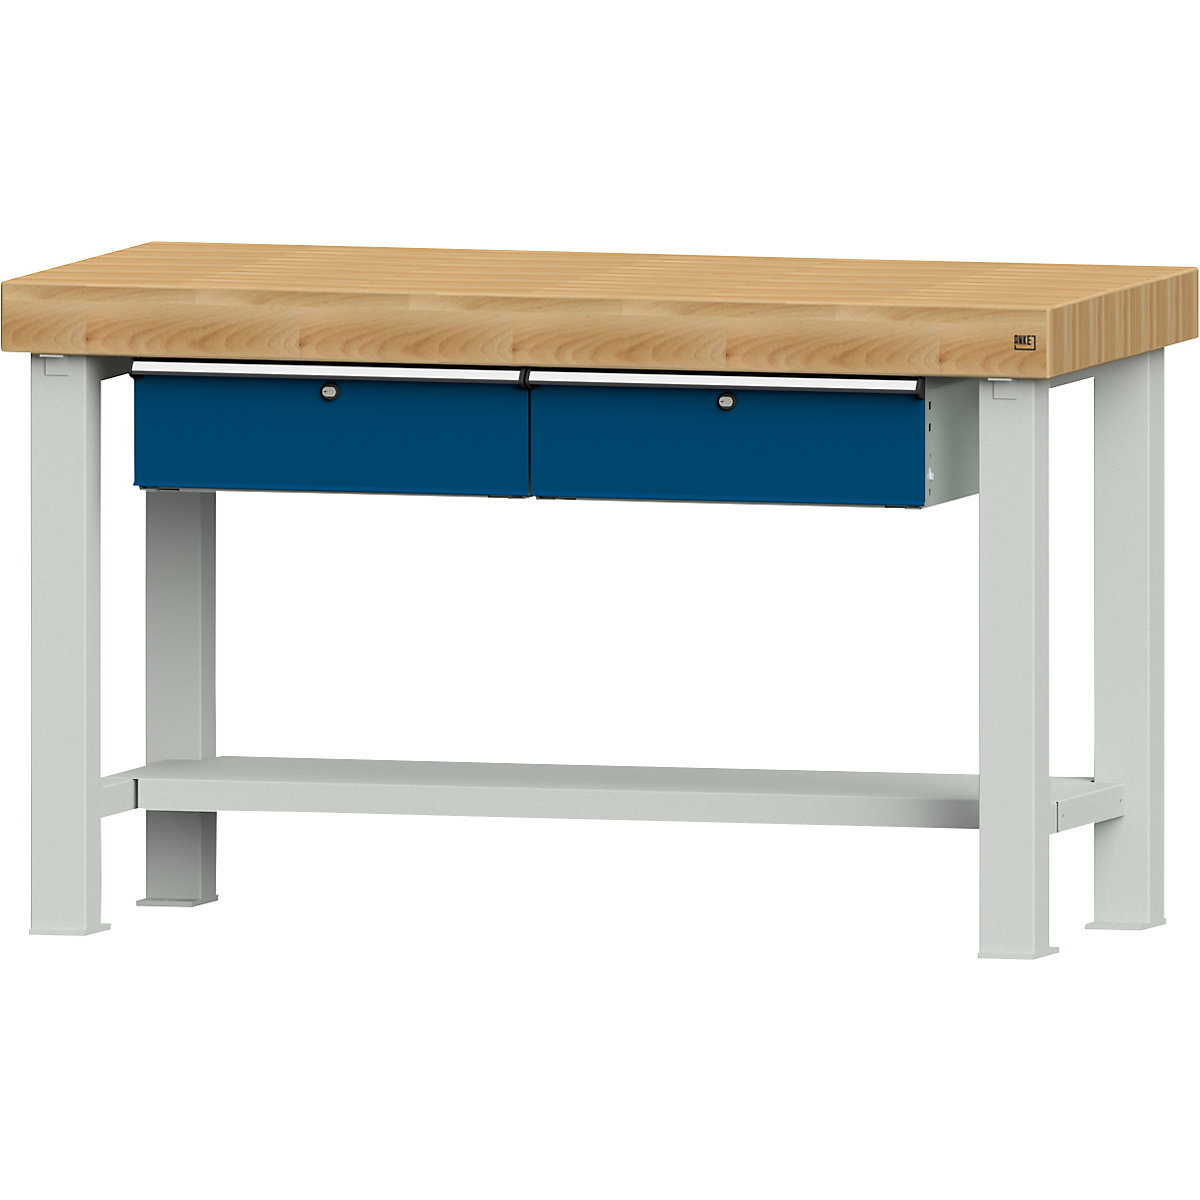 ANKE – Radni stol za teške terete, širina ploče 1500 mm, s 2 ladice, debljina ploče 100 mm